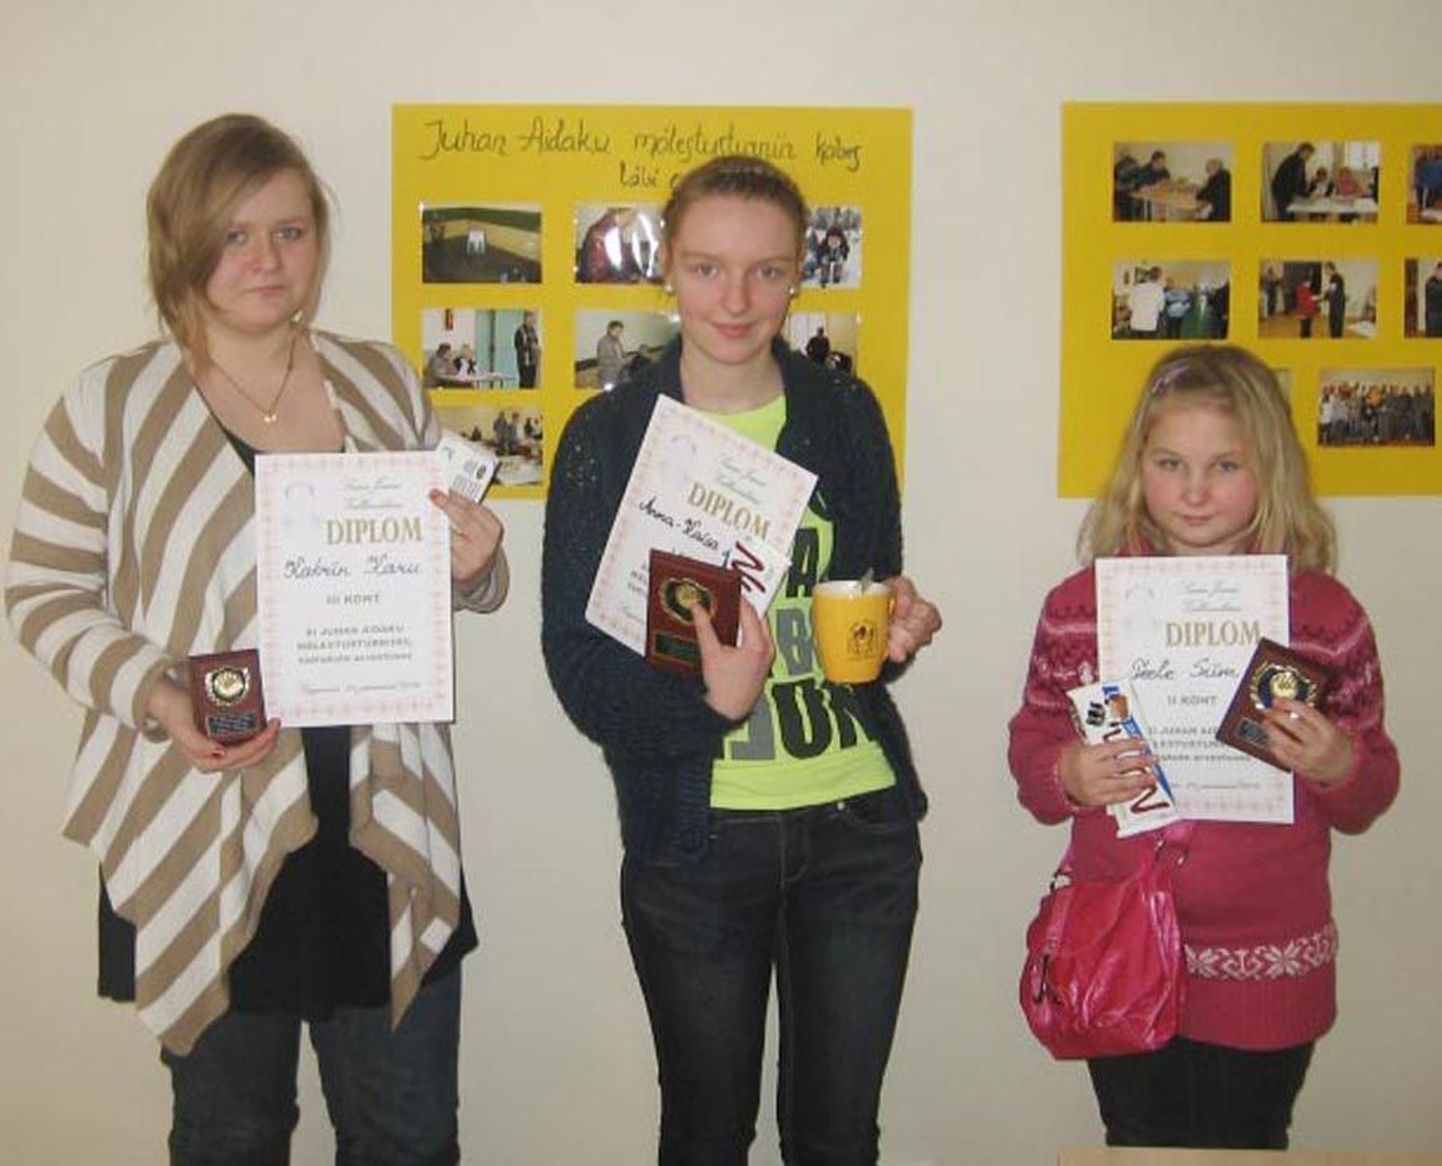 Juhan Aidaku mälestusturniiri tütarlaste kolm paremat olid Teele Siim (vasakul), võitja Anna-Kaisa Adamson ja Katrin Karu.